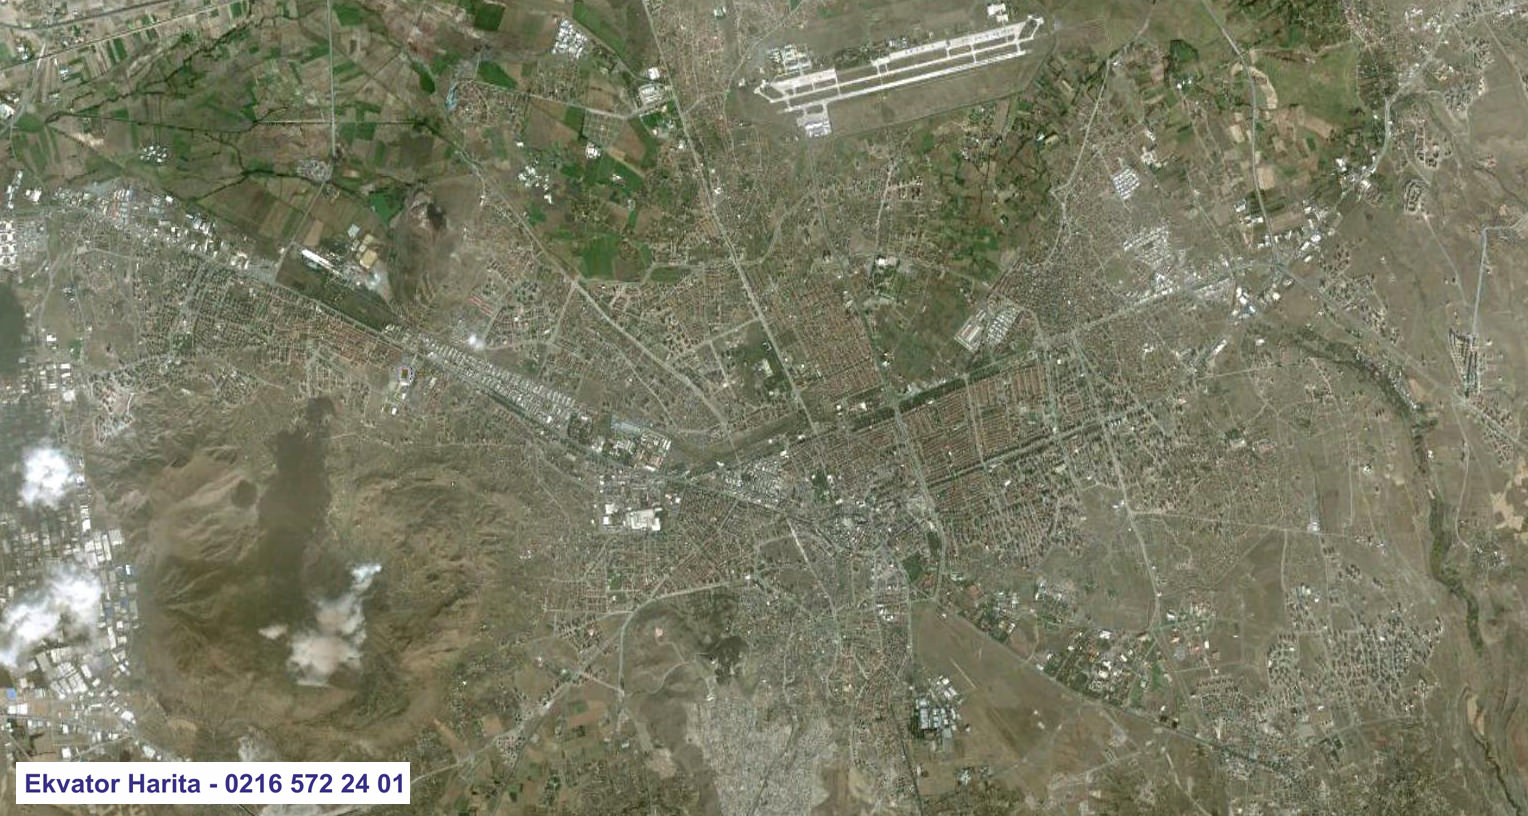 Kayseri Uydu Haritası Örnek Fotoğrafı